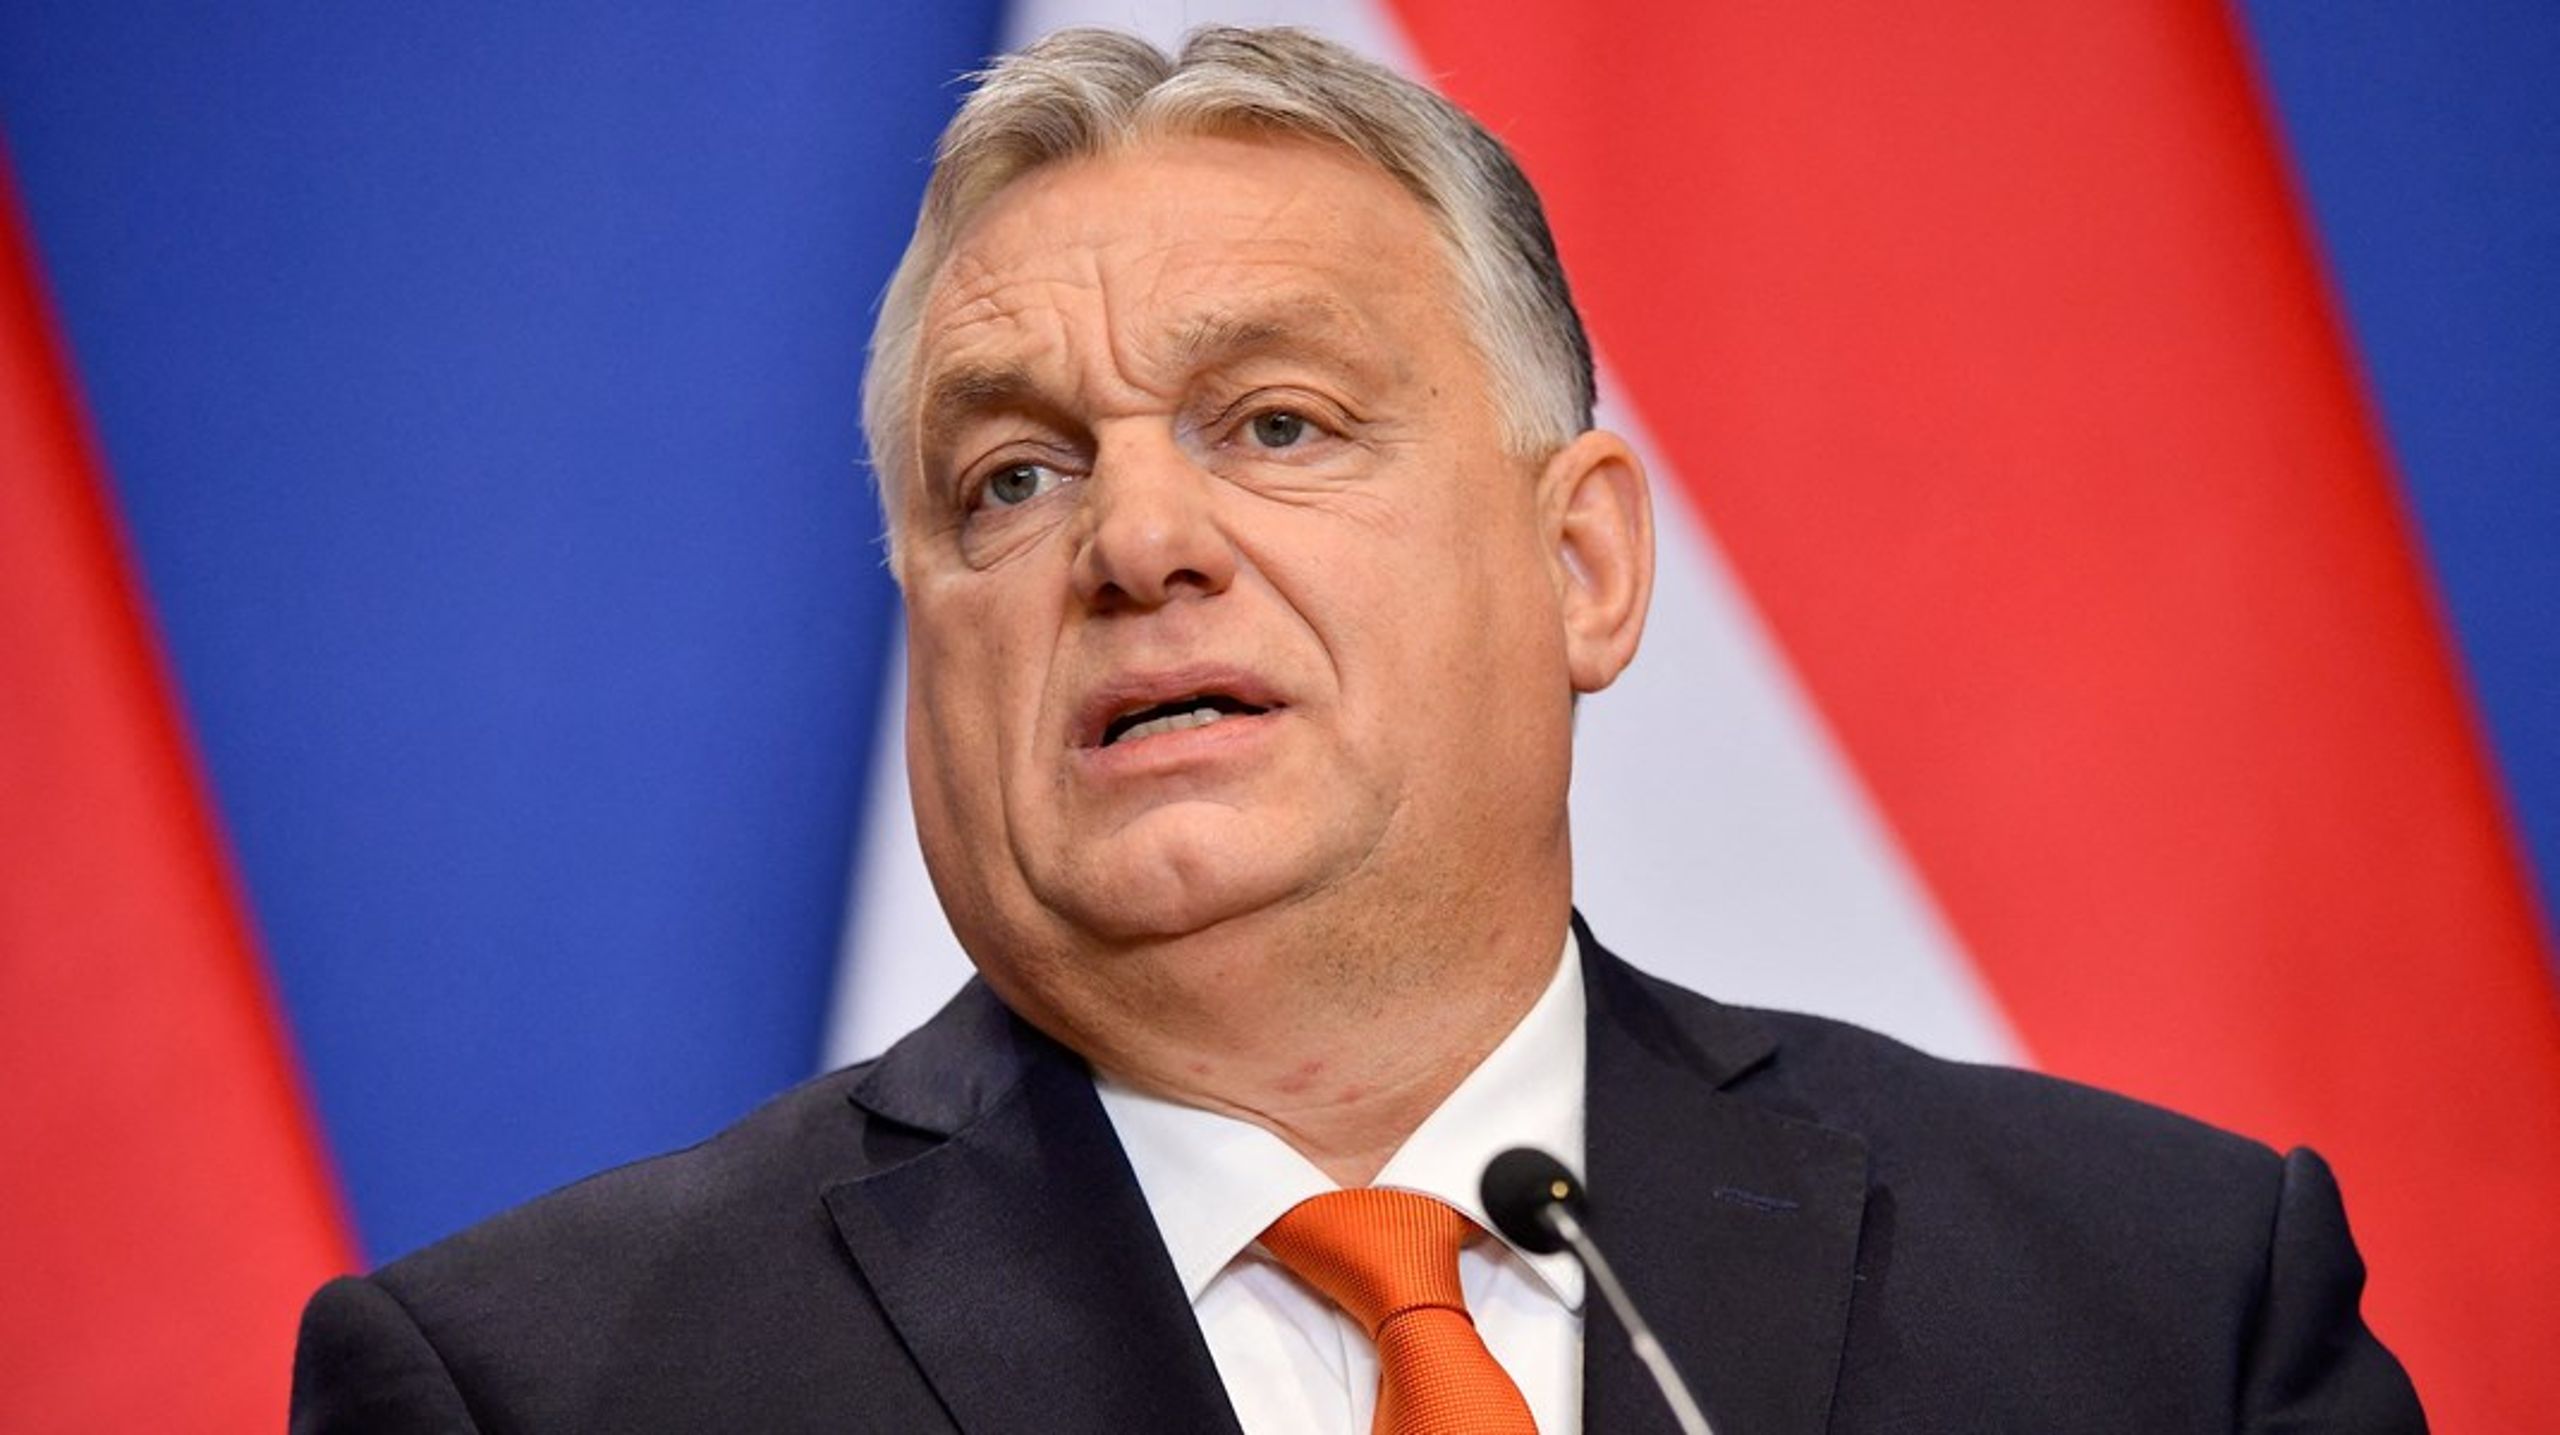 Viktor Orbán har systematisk undergravet demokratiet i Ungarn, hvor korruption og nepotisme er blevet en integreret del af styret. Derfor er det et vigtigt signal, når præsident Biden ikke inviterer Ungarn til demokrati-topmøde, skriver Niels Fuglsang.